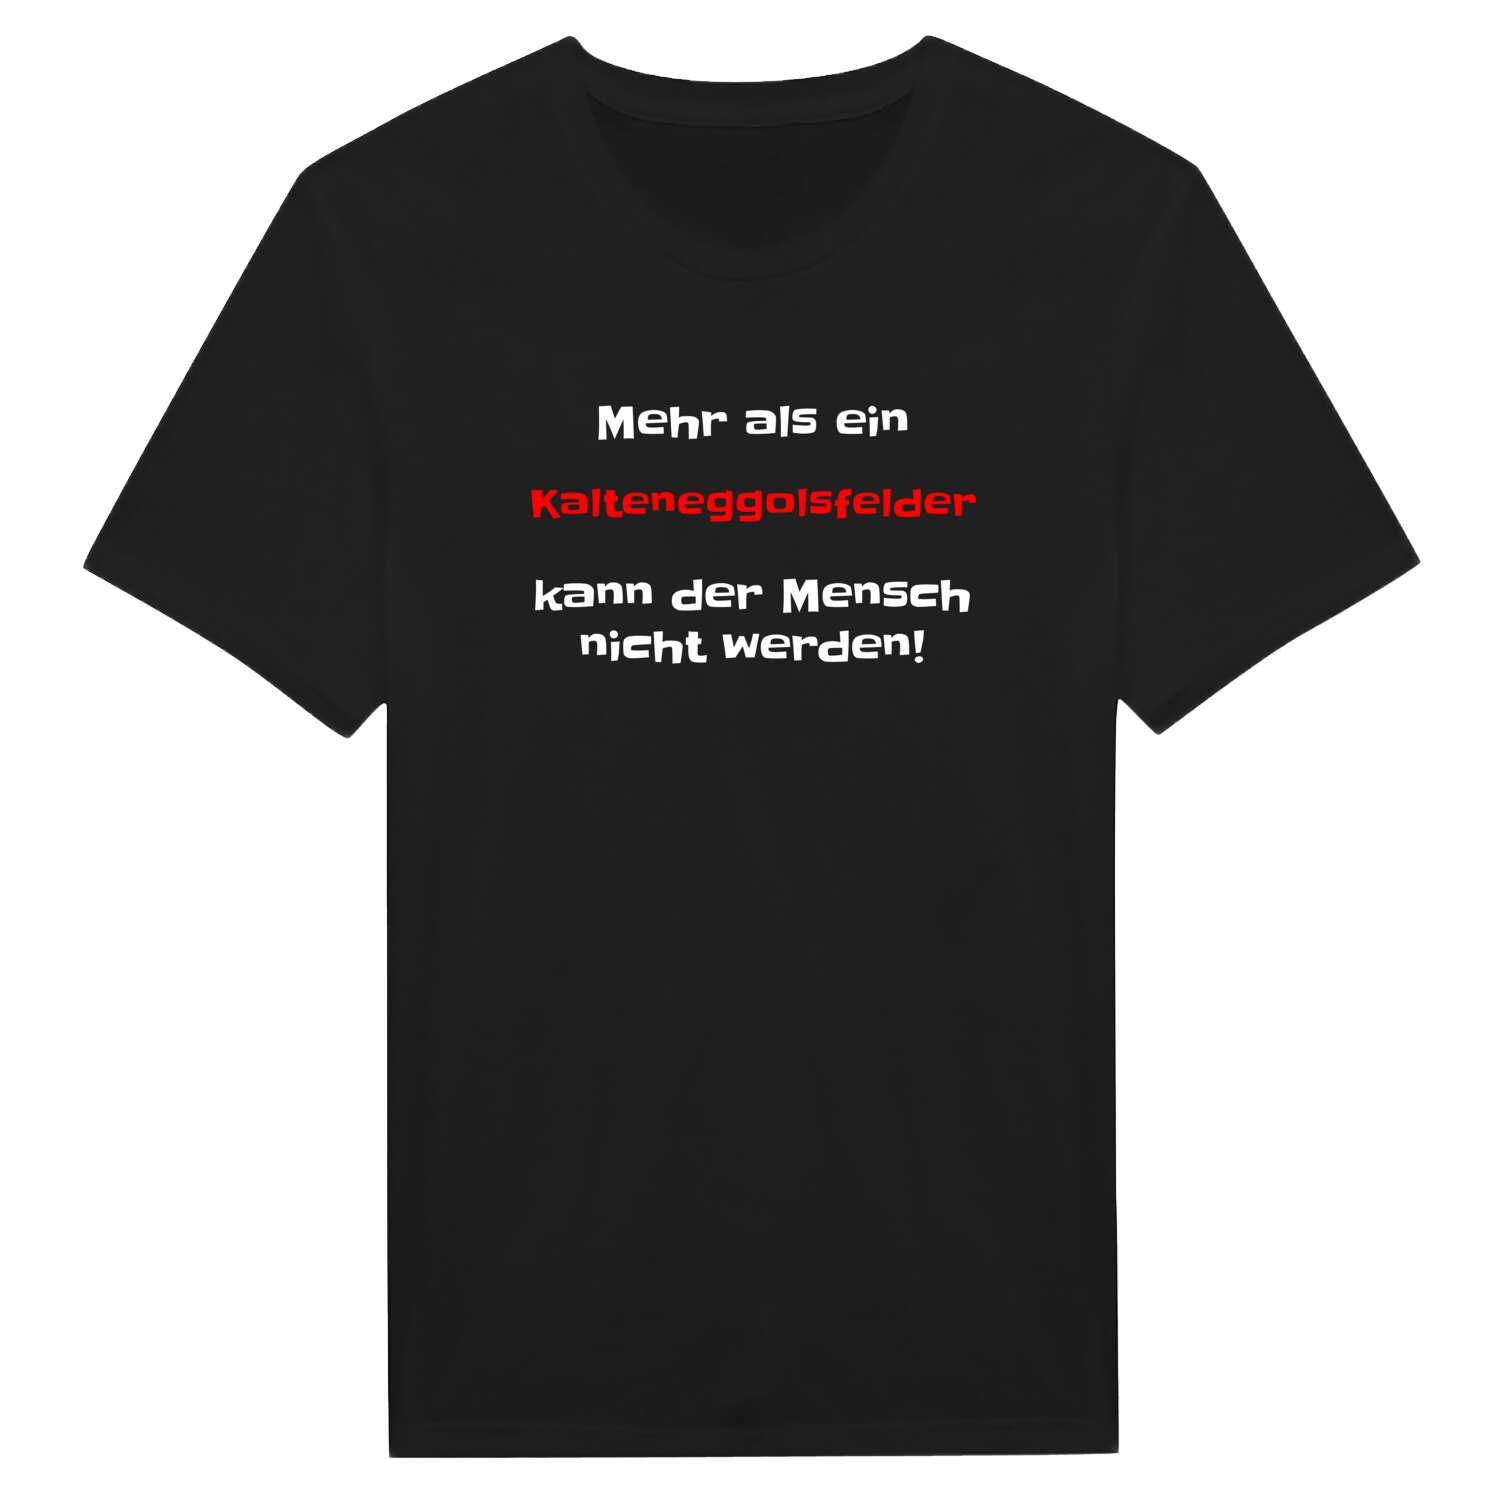 Kalteneggolsfeld T-Shirt »Mehr als ein«